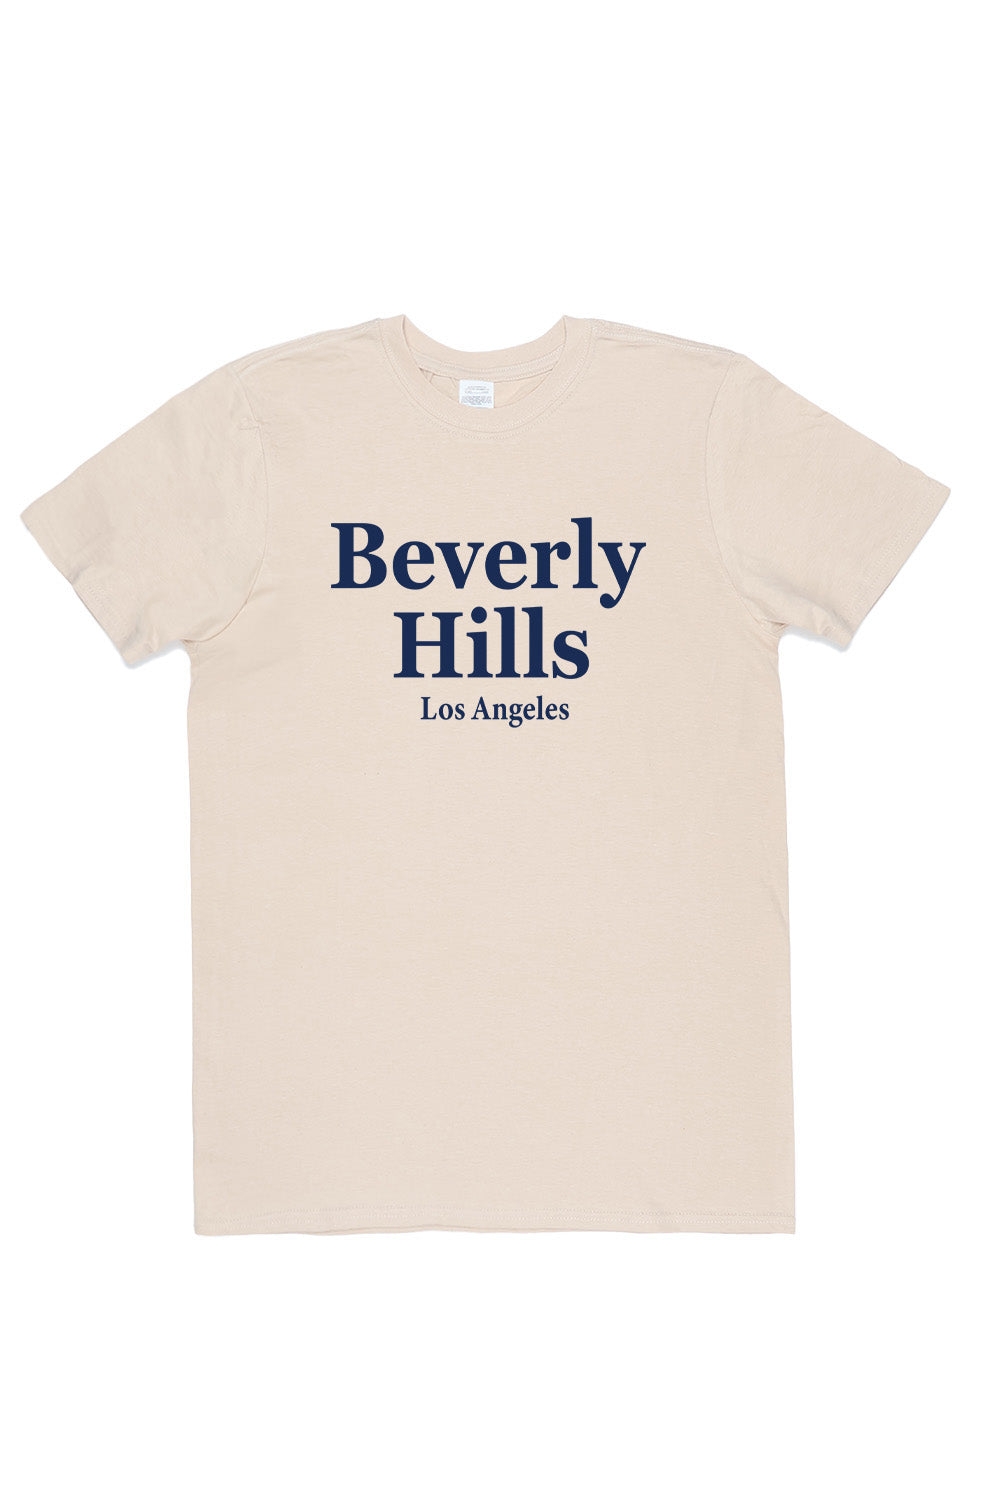 Beverly Hills T-Shirt in Sand(Custom Packs)